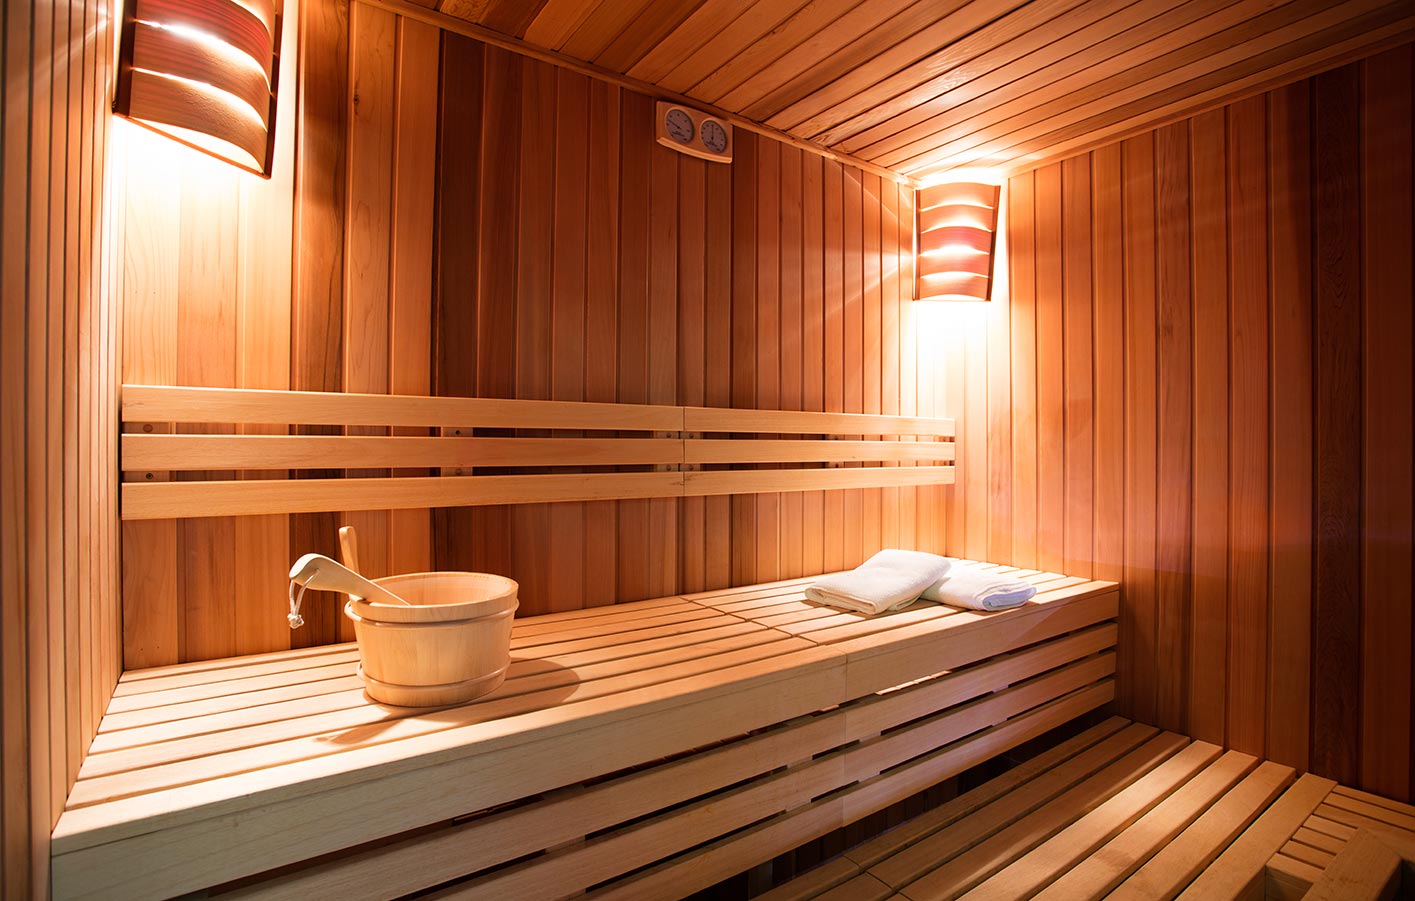 herkömmliche, klassische Sauna, Trockensauna von Innen